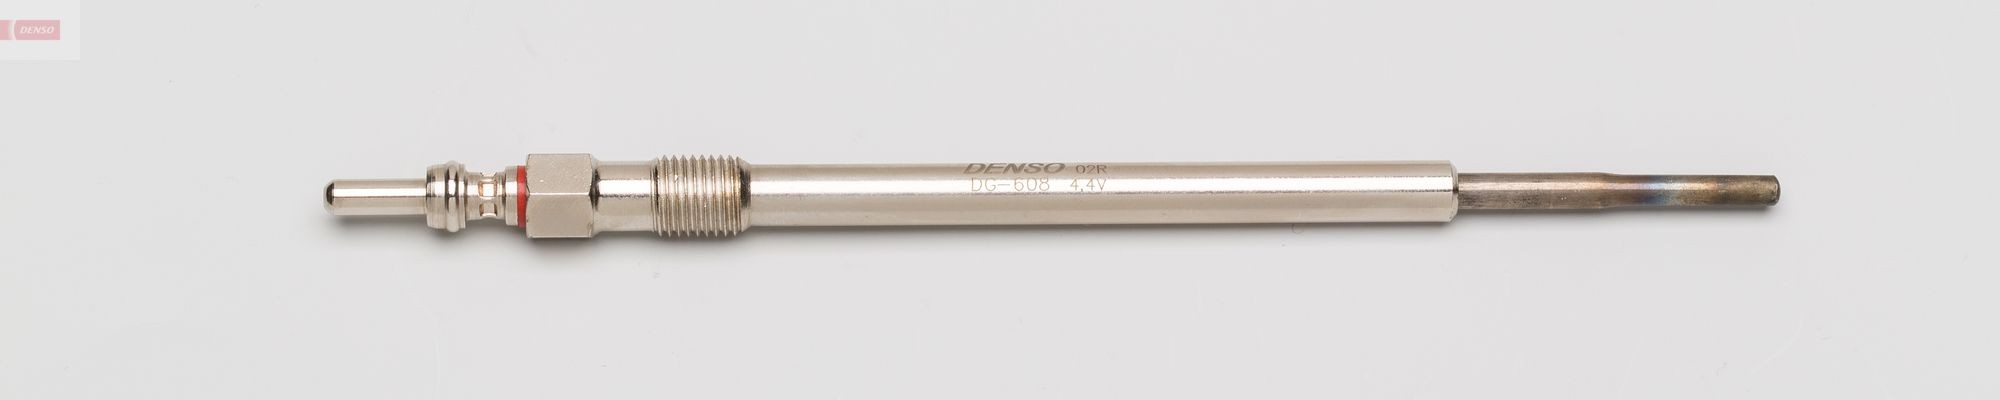 DG-608 DENSO Glow plug DAIHATSU 4,4V M9x1.0, 156,4 mm, 10 Nm, 93